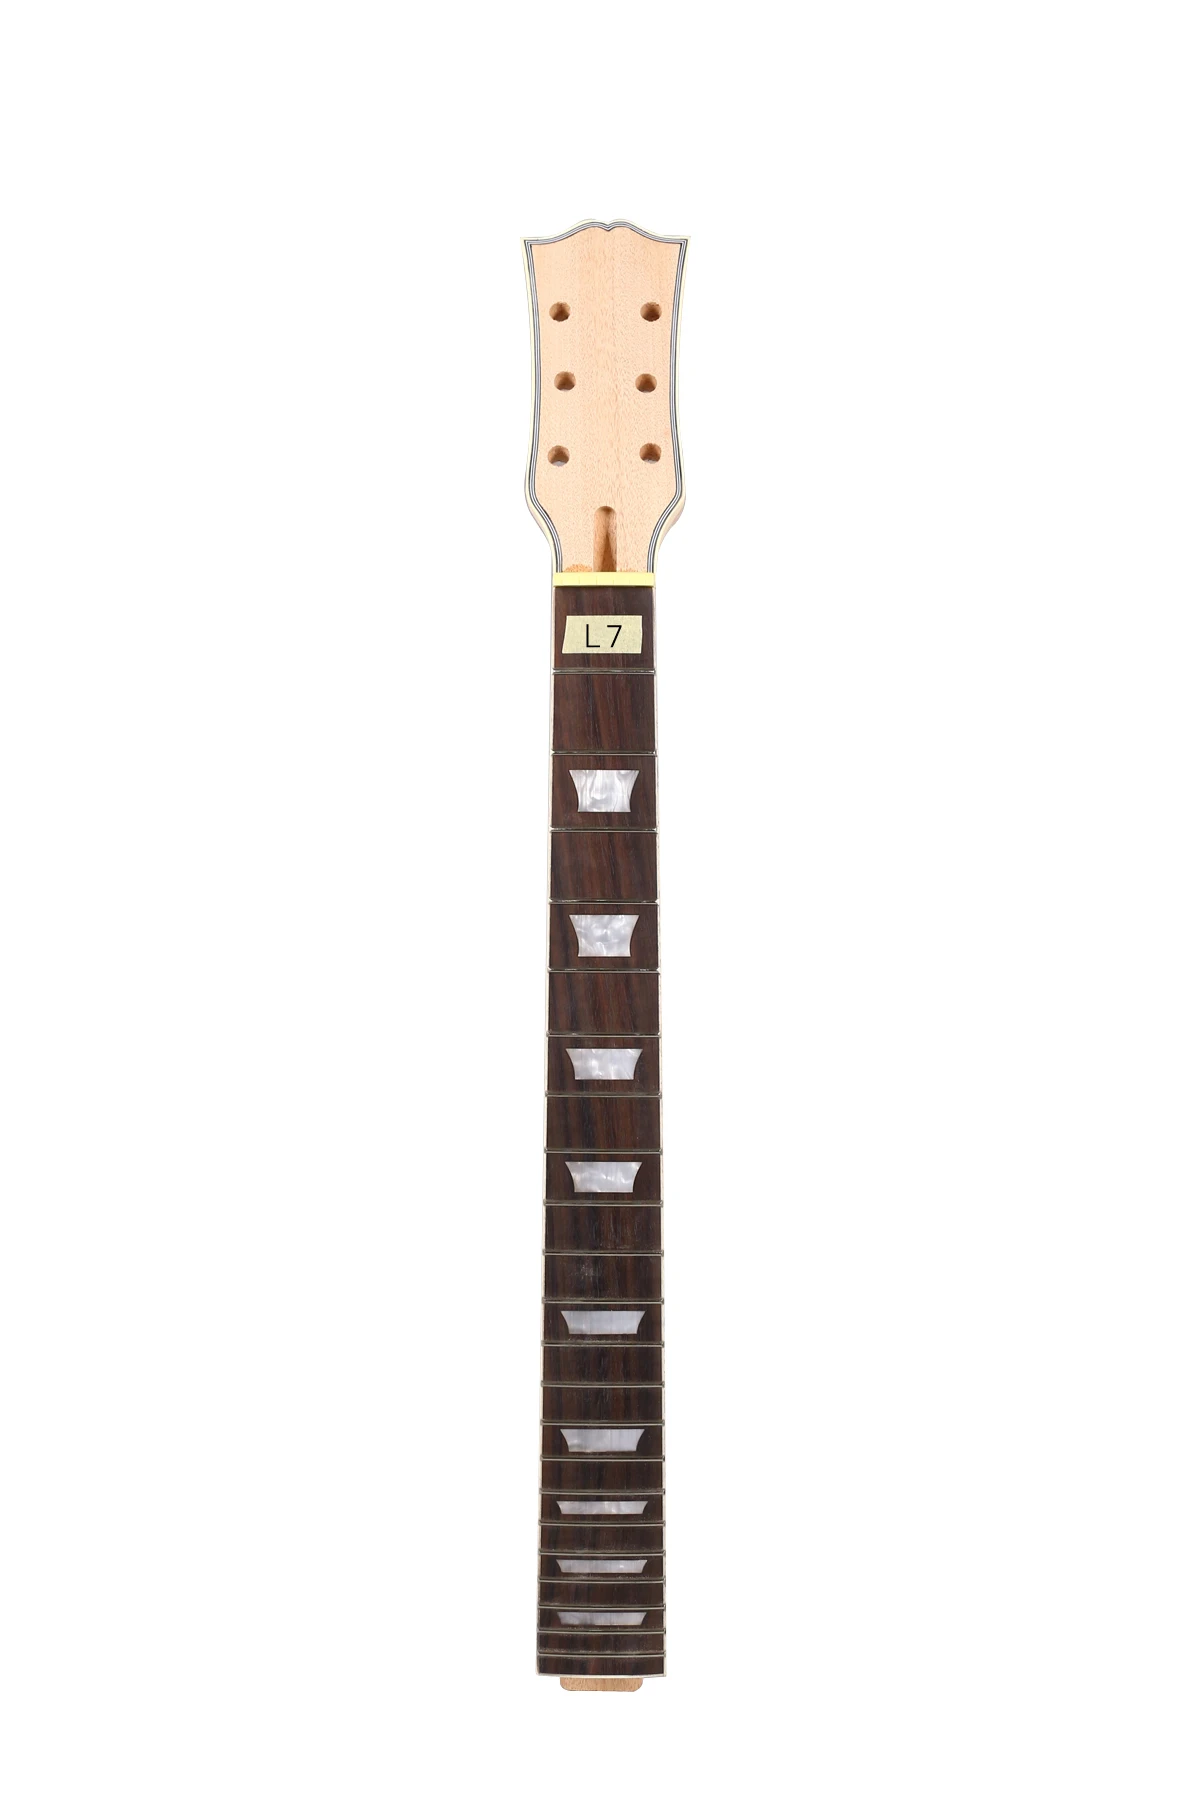 Elektro Gitar Boyun 22 fret 628mm 24.75 inç maun Gülağacı klavye el yapımı Bitmemiş Görüntü 1